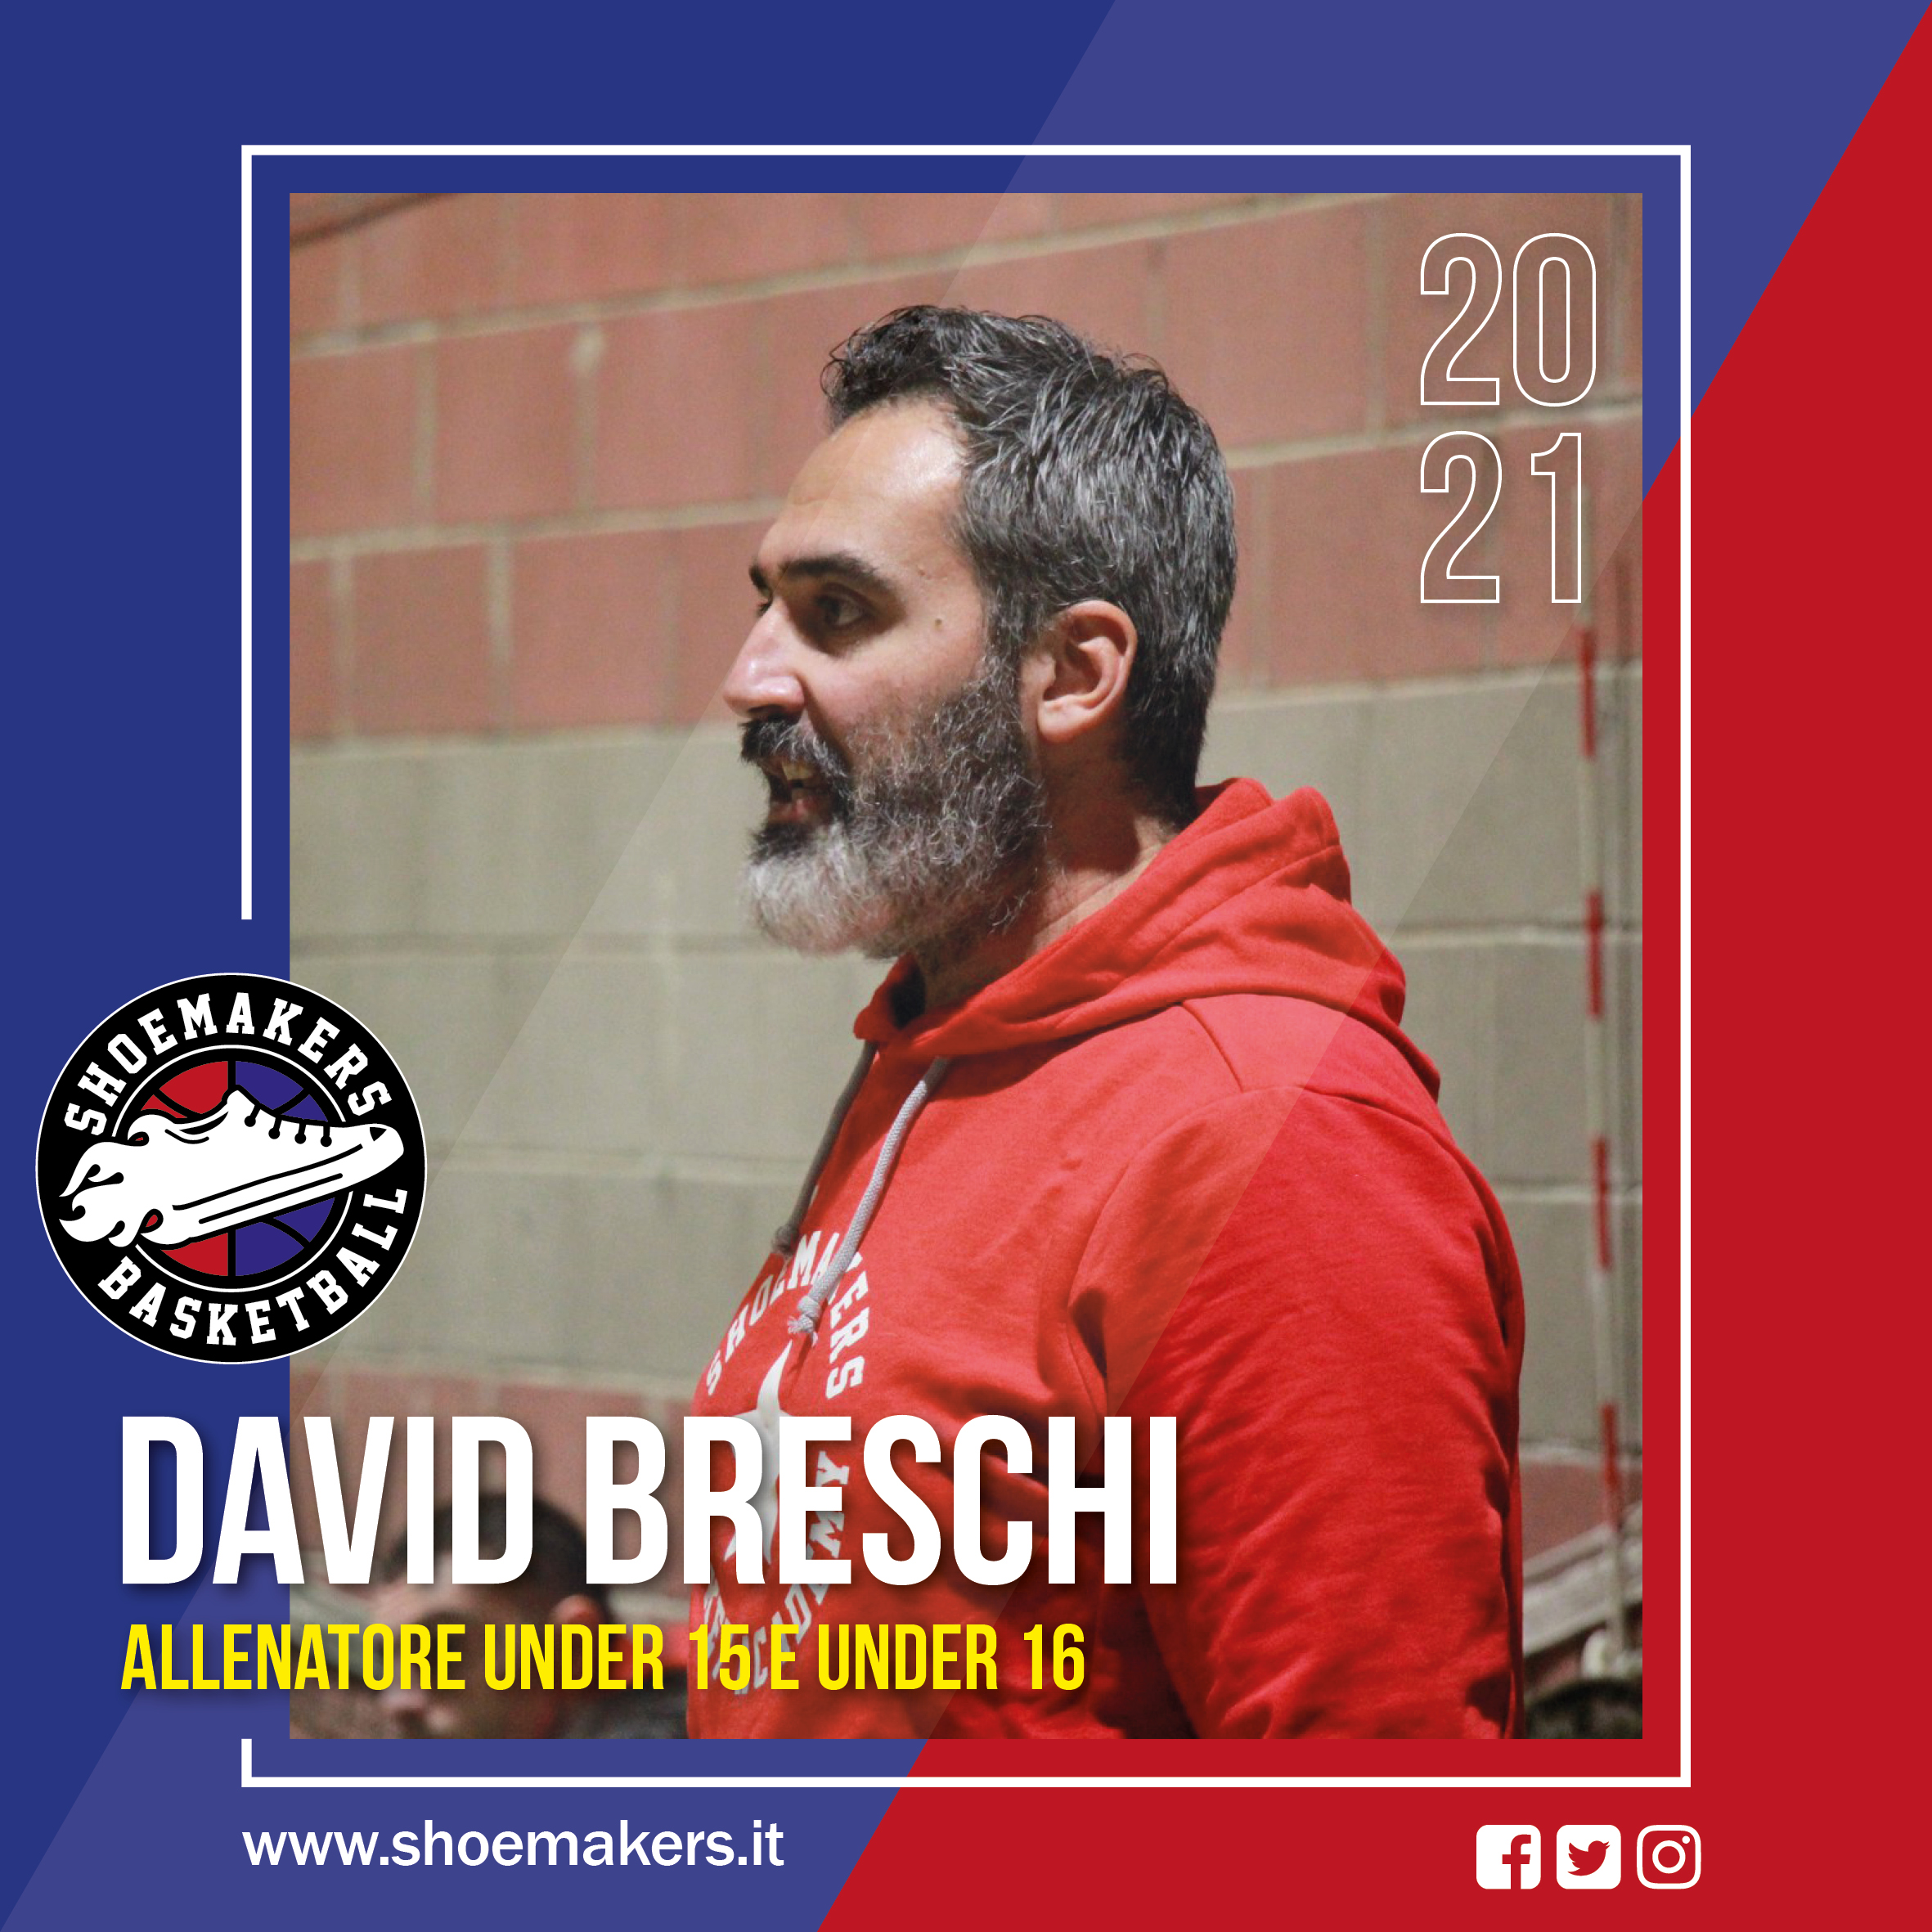 David Breschi